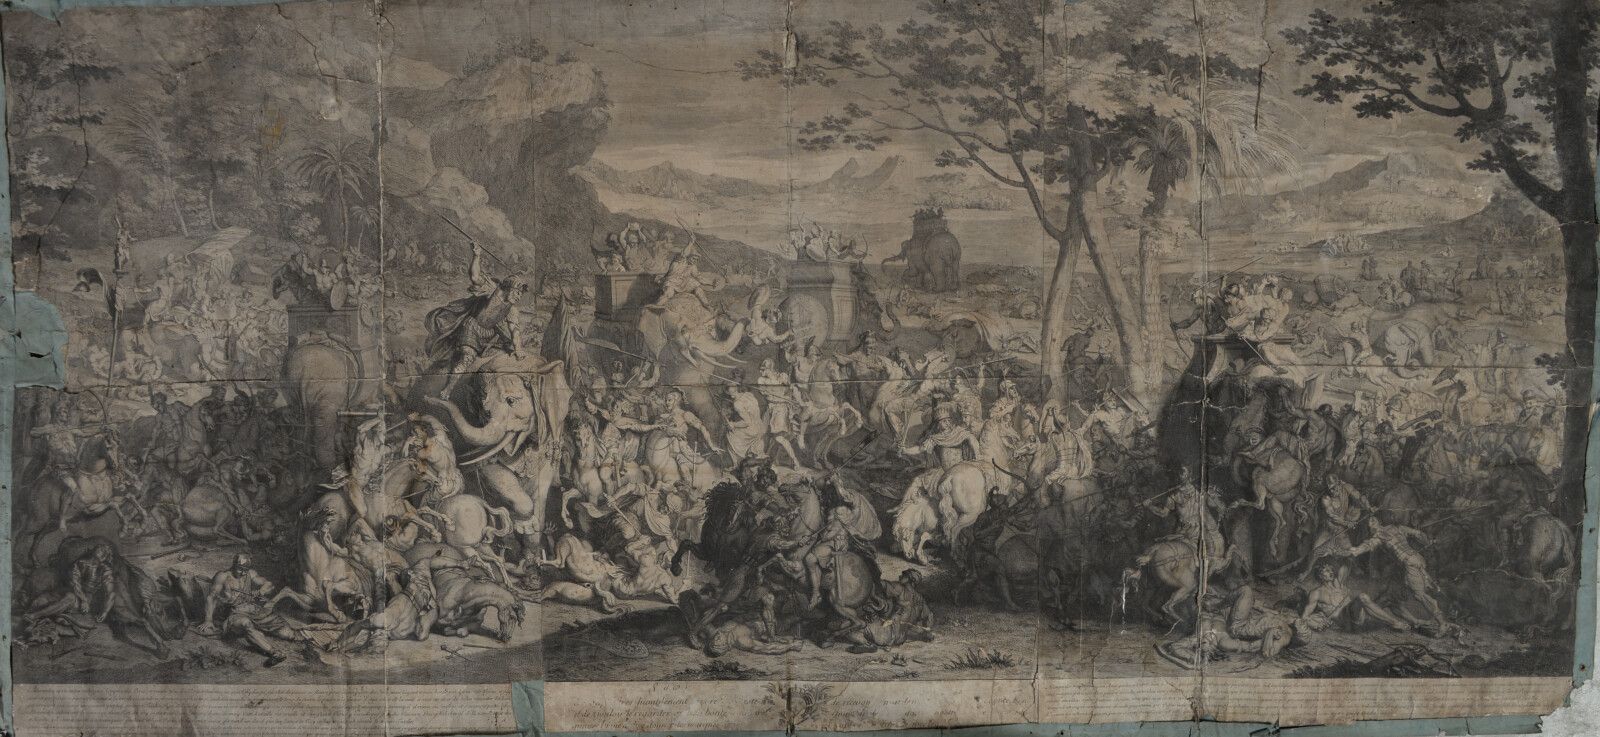 Null Bernard PICART (1673-1733)

La batalla de Alejandro

Grabado en negro pegad&hellip;